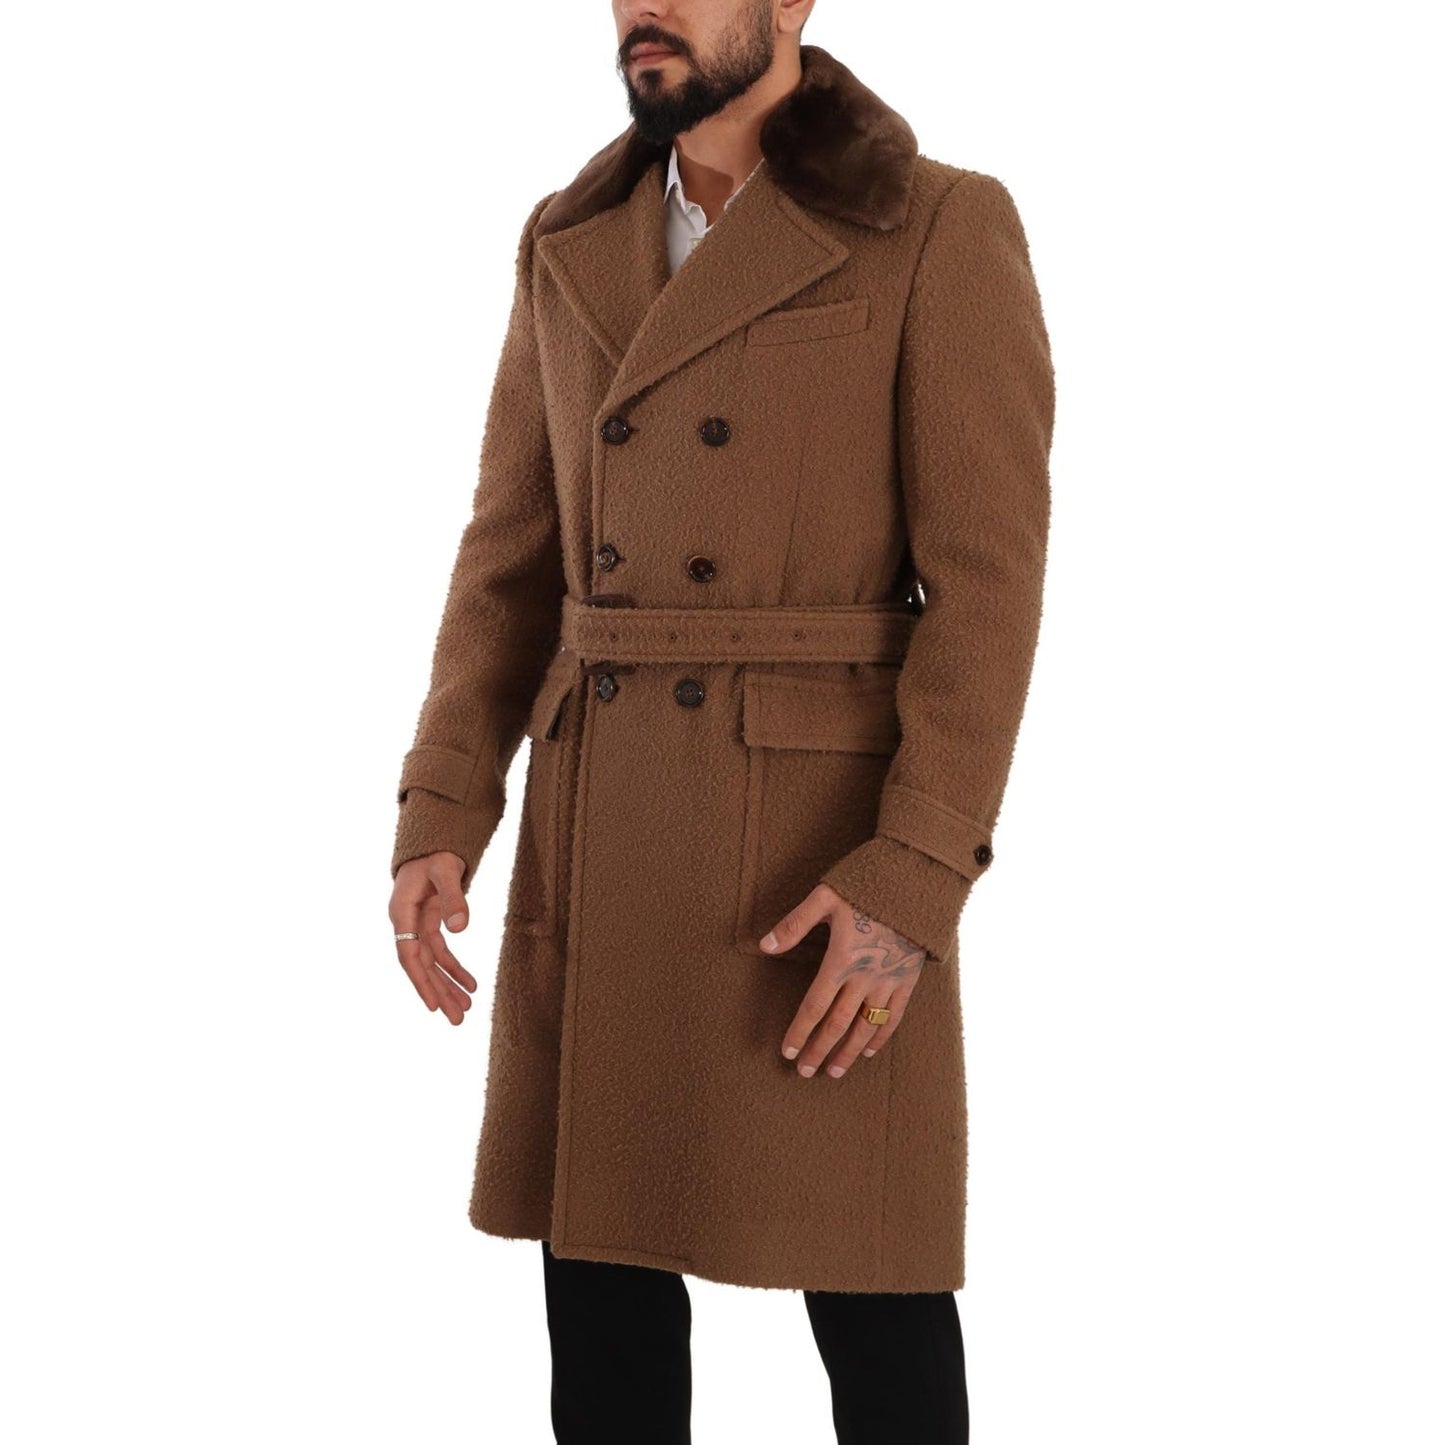 Dolce & Gabbana Elegant Double Breasted Wool Overcoat brown-wool-long-double-breasted-overcoat-jacket IMG_5041-scaled-4eb065f4-181.jpg